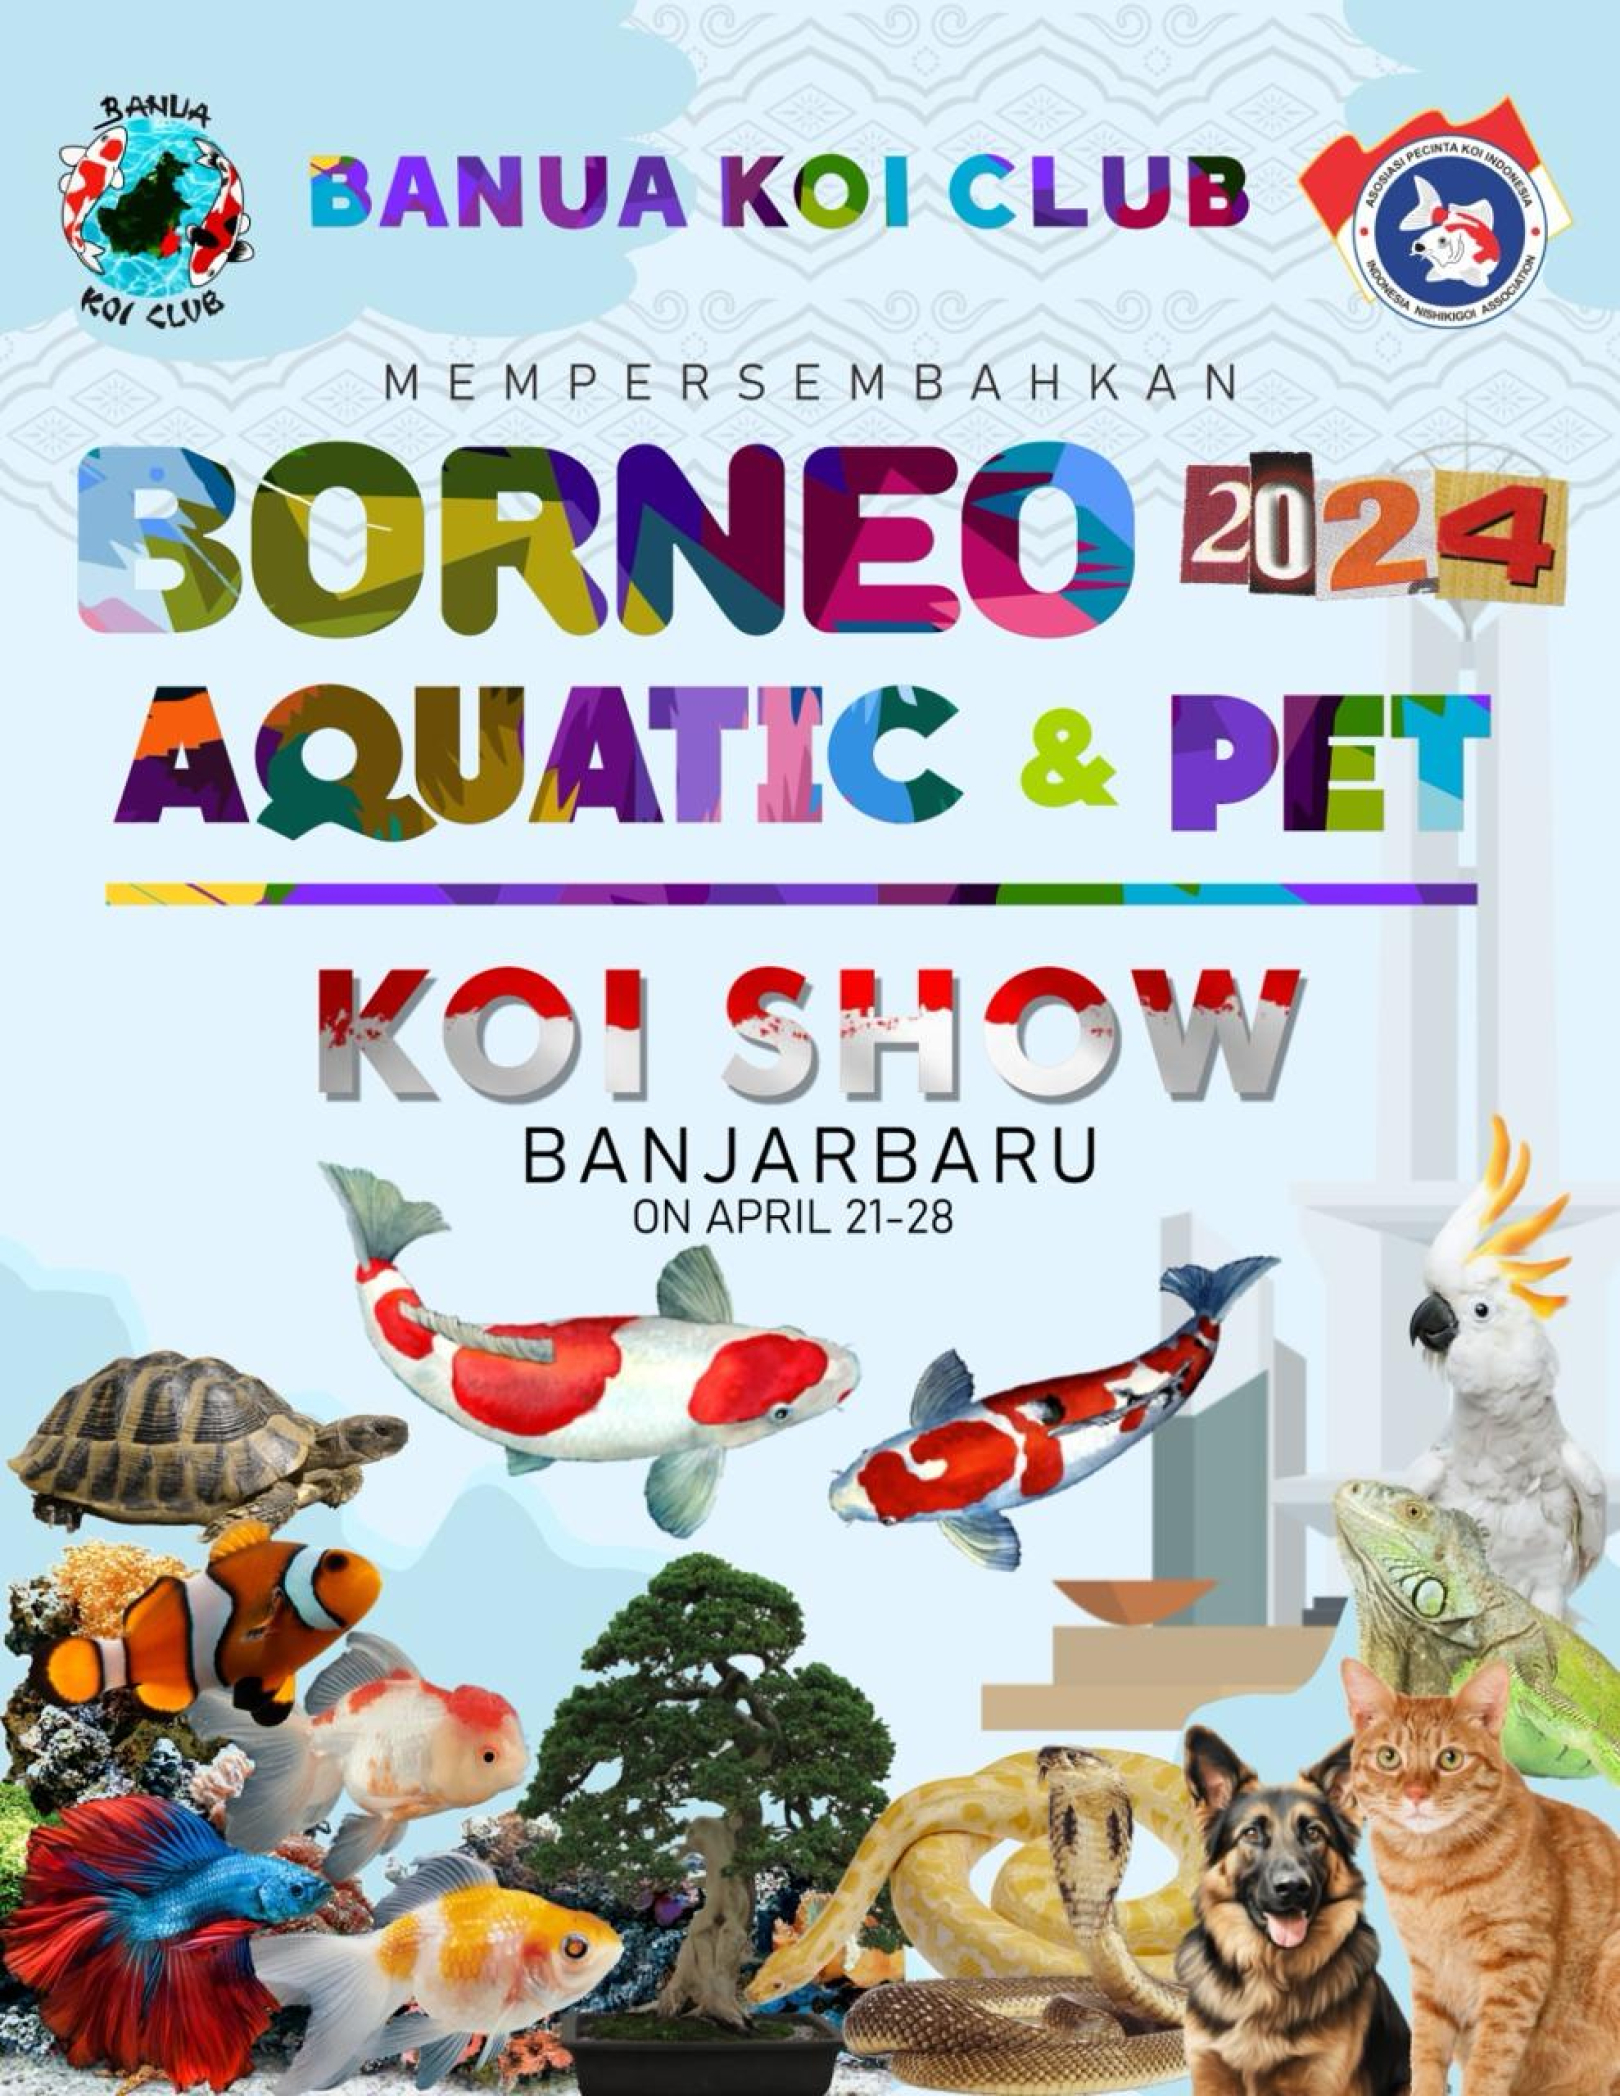 Borneo 2024 Aquatic & Pet